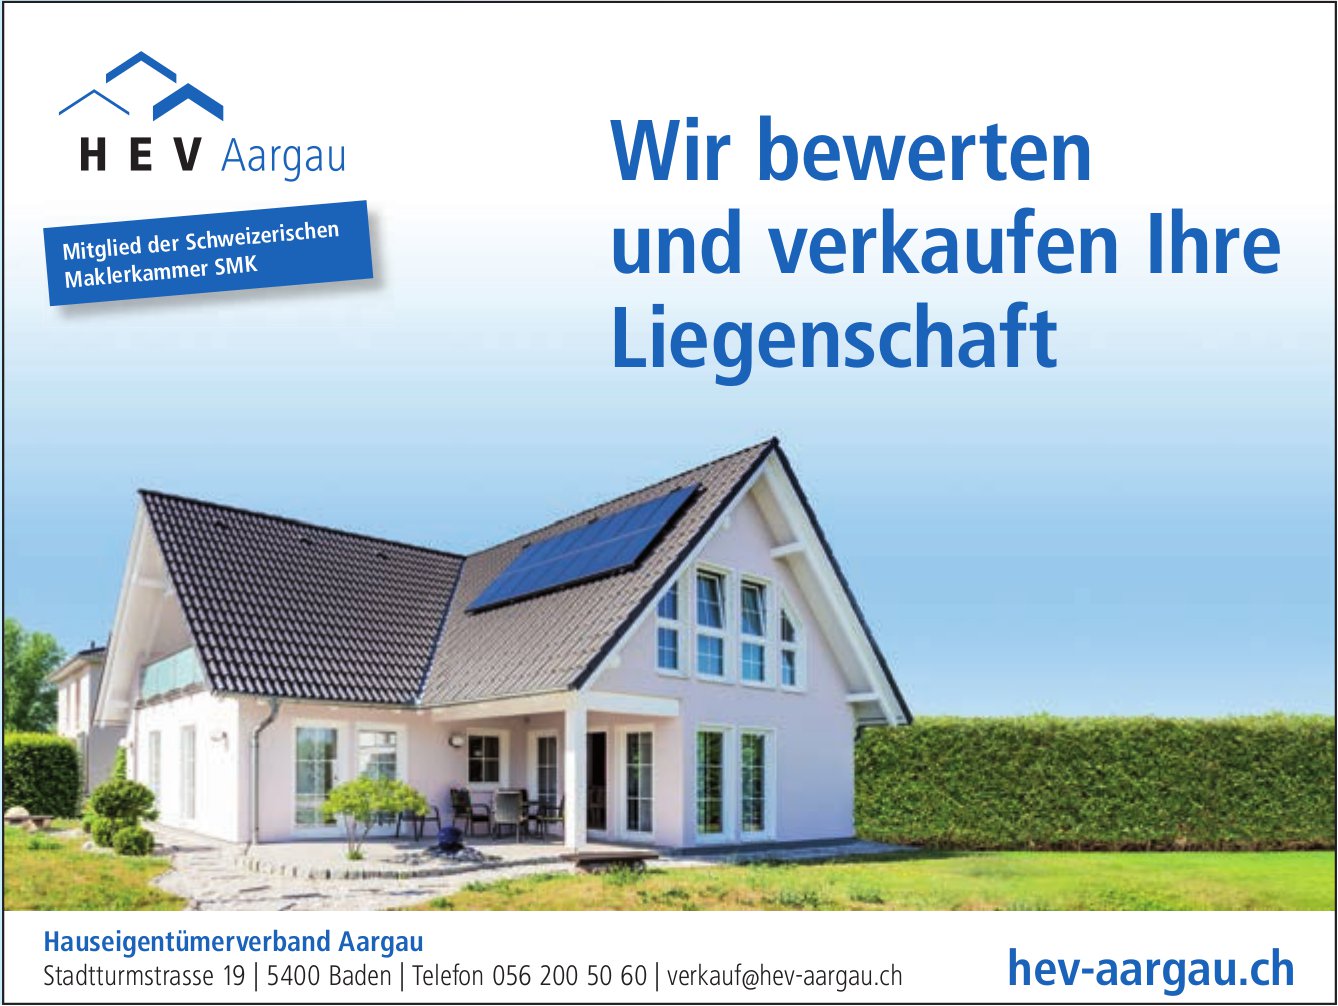 HEV Aargau - Wir bewerten und verkaufen Ihre Liegenschaft